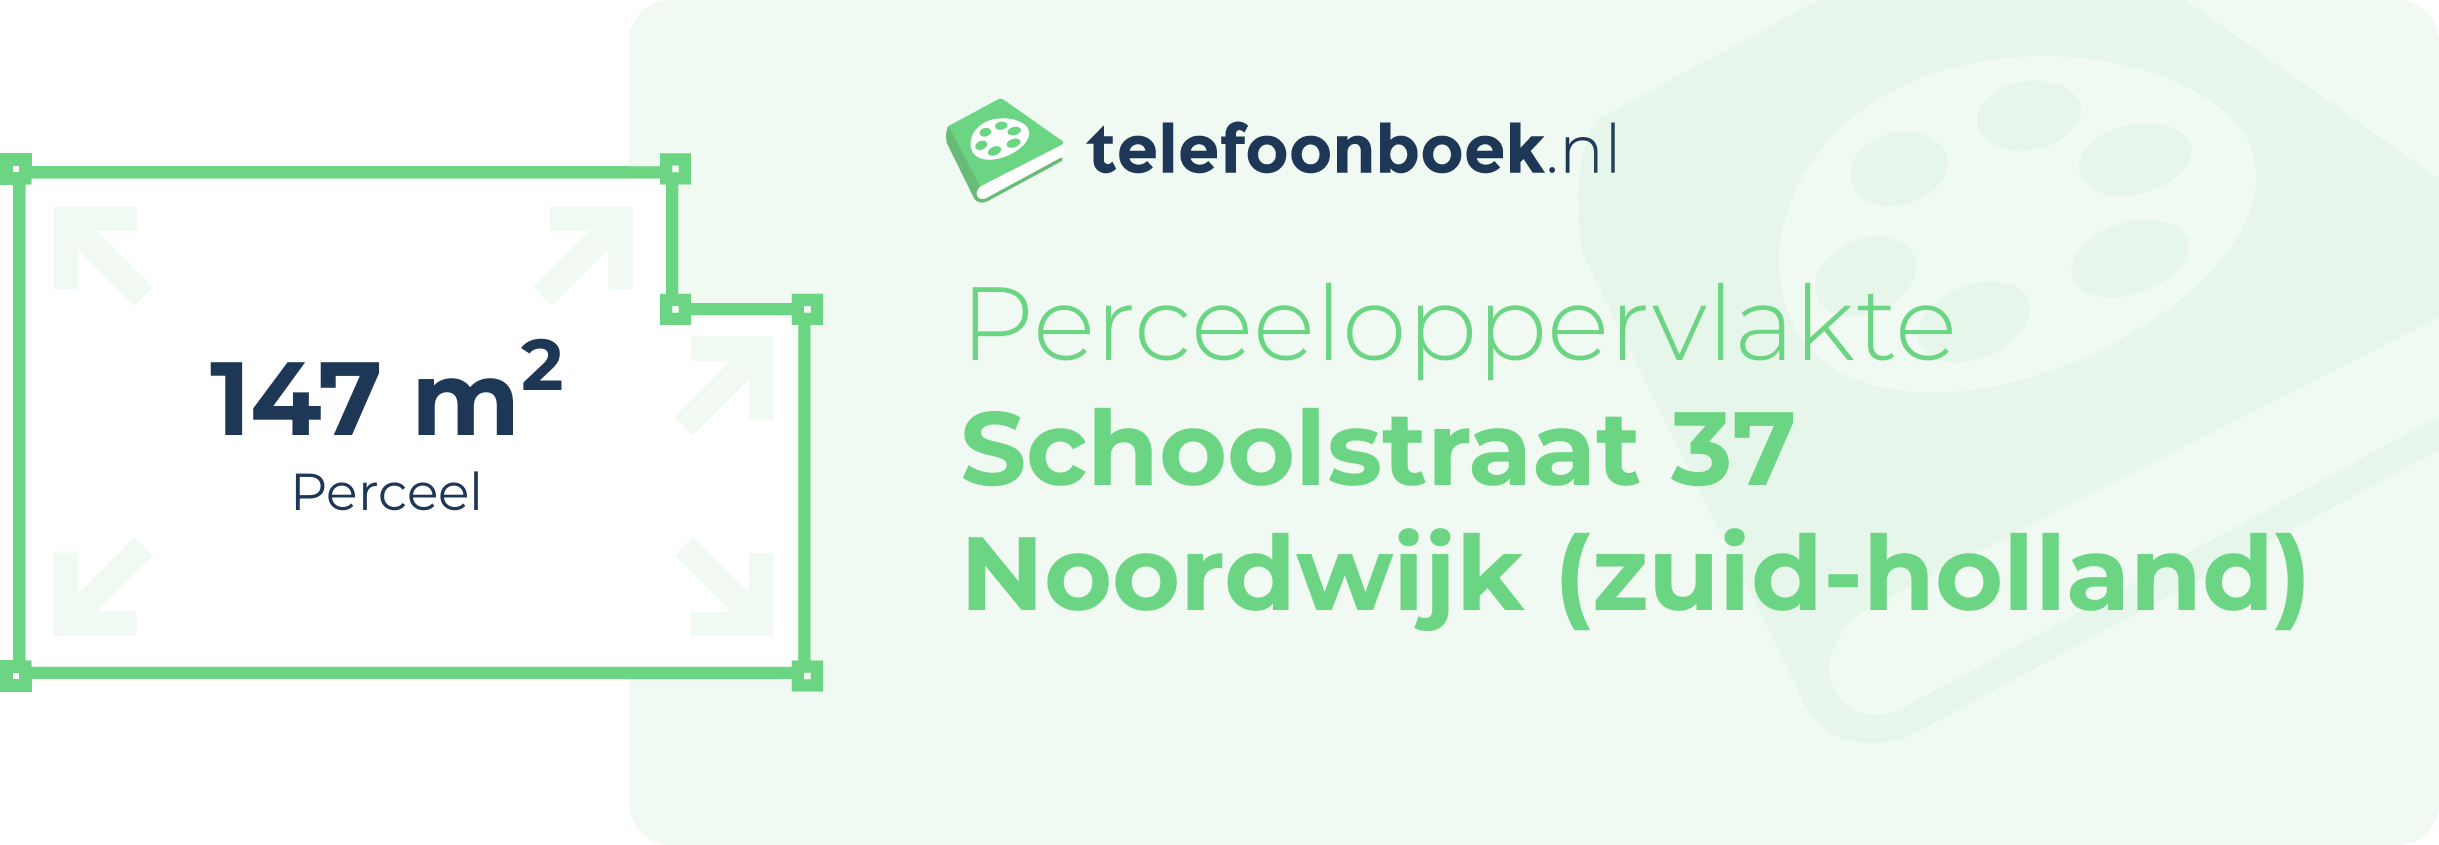 Perceeloppervlakte Schoolstraat 37 Noordwijk (Zuid-Holland)